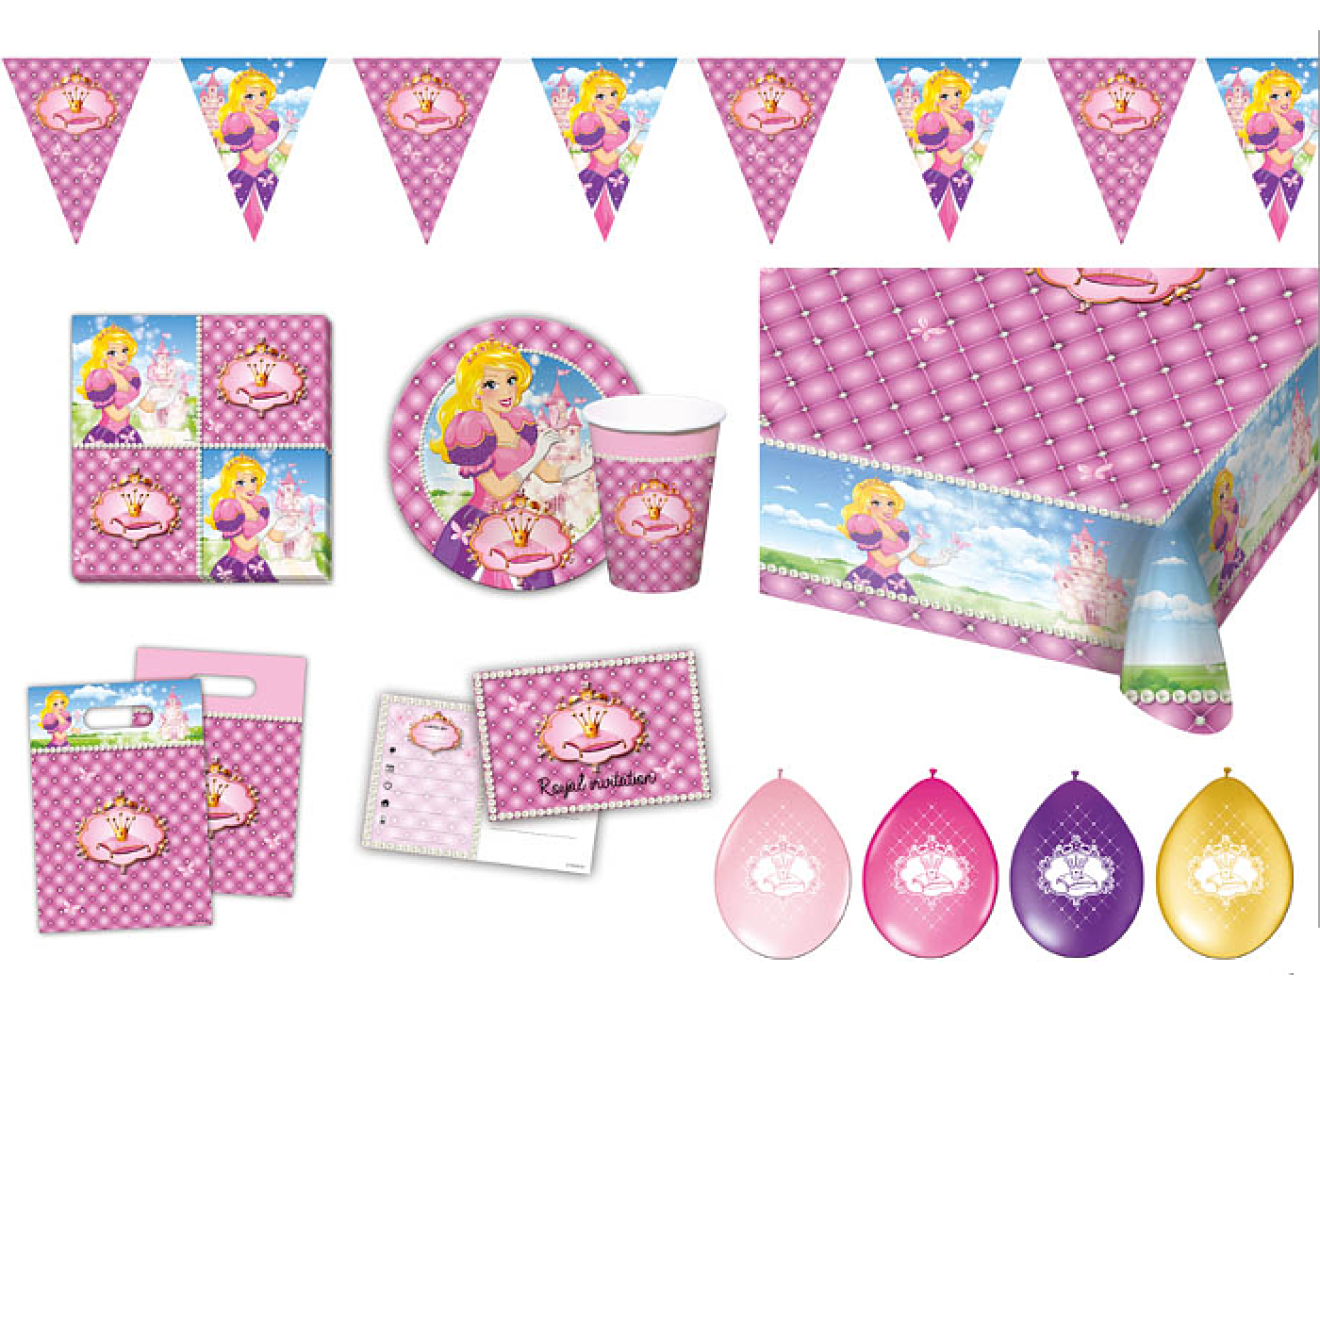 Partypaket Dekoset Geburtstagsparty Prinzessinnen 48 Teile + 10 Luftballons Pink Ø 30 cm